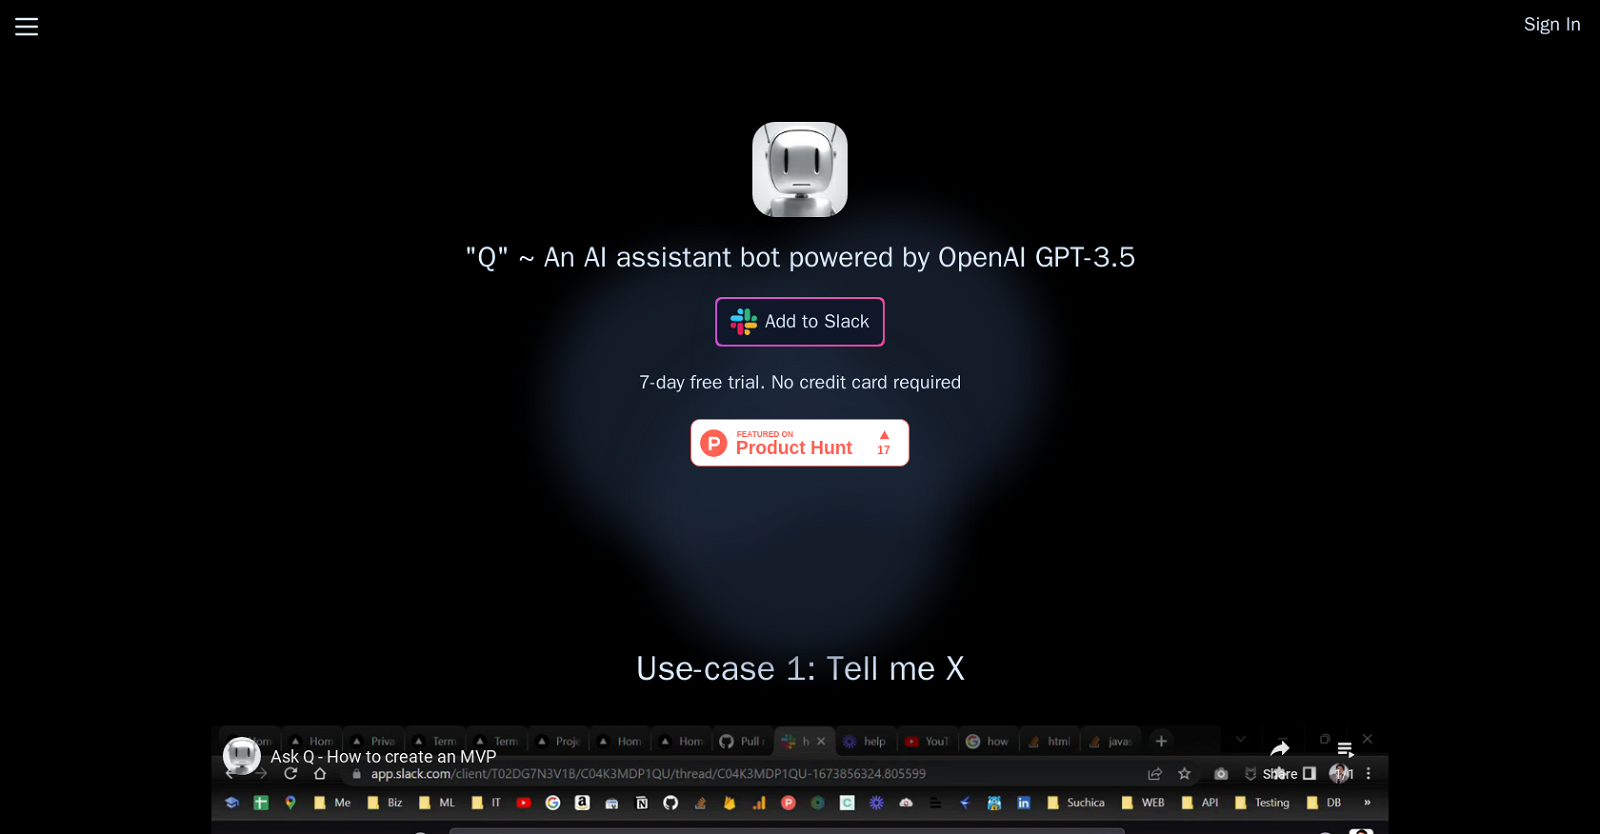 Q Slack Chatbot website